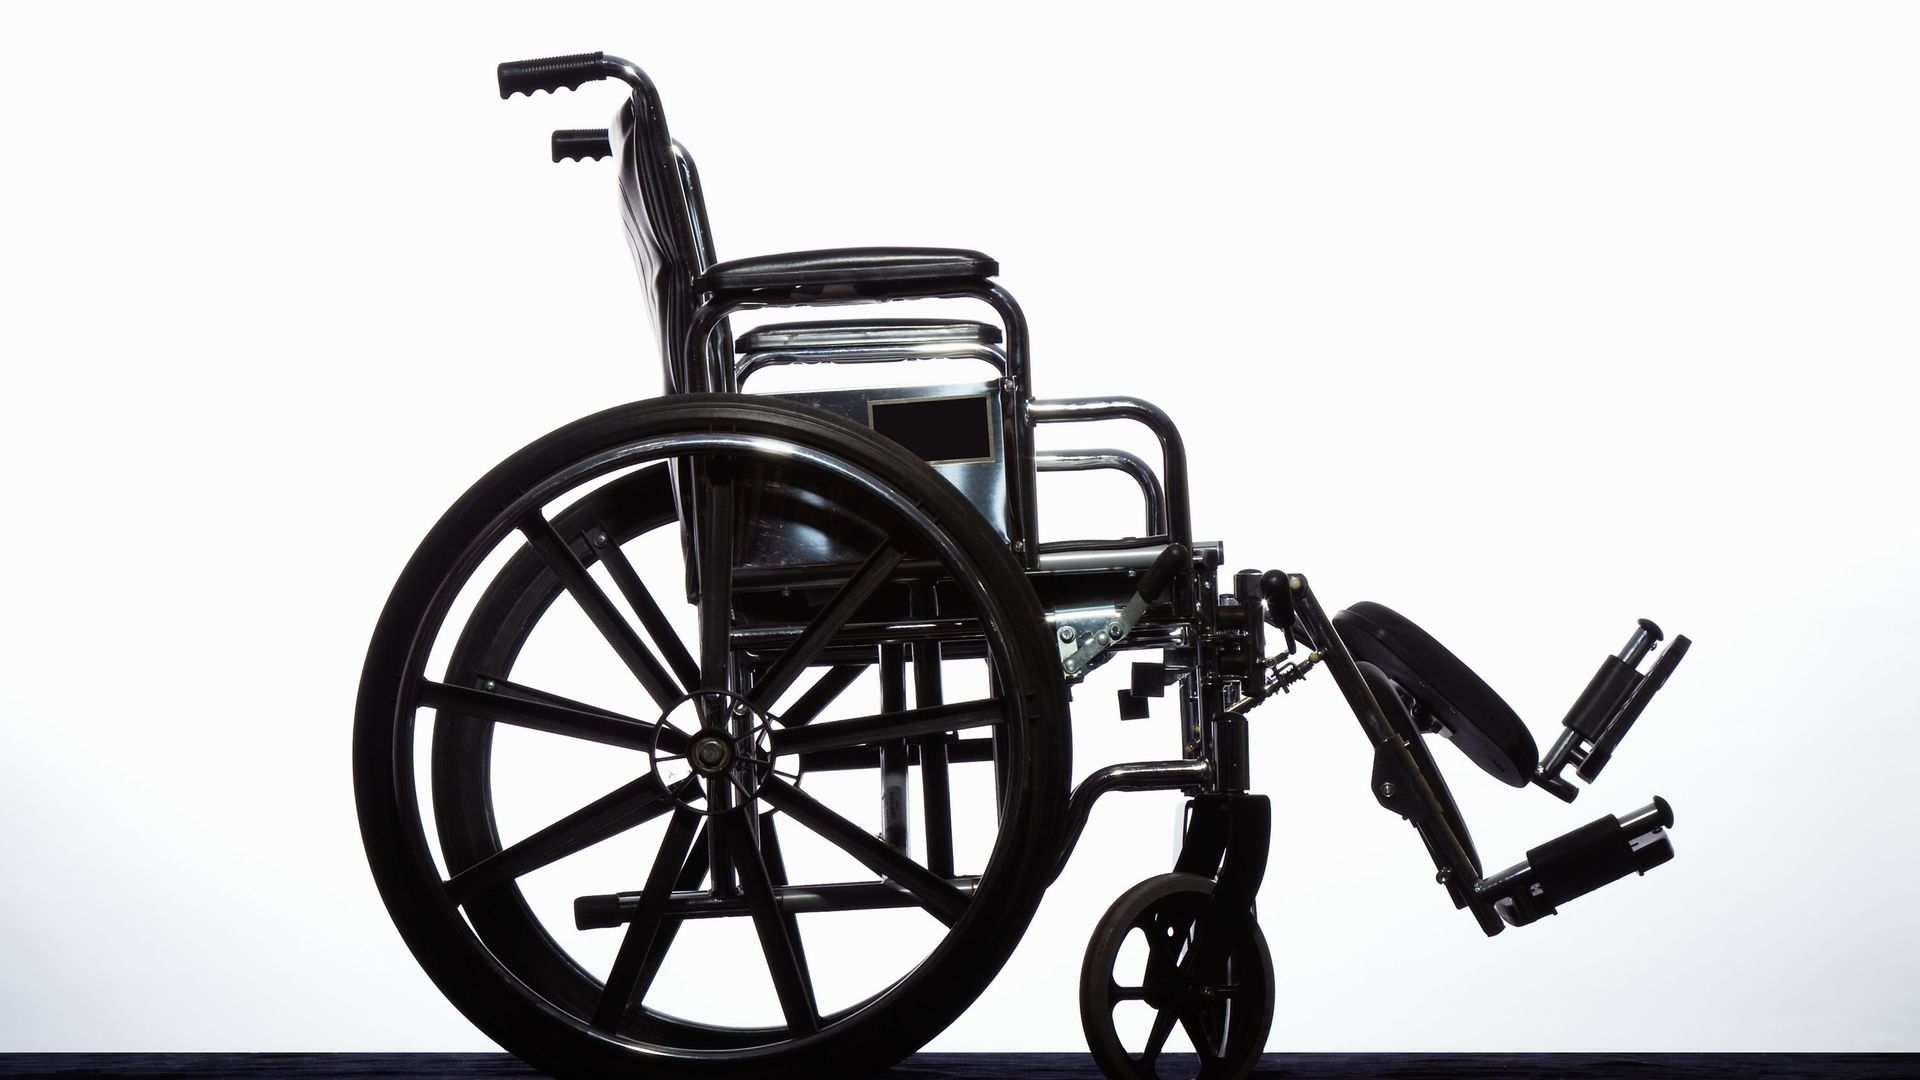 Etats-Unis : un policier tue un sexagénaire en fauteuil roulant qui lui tournait le dos